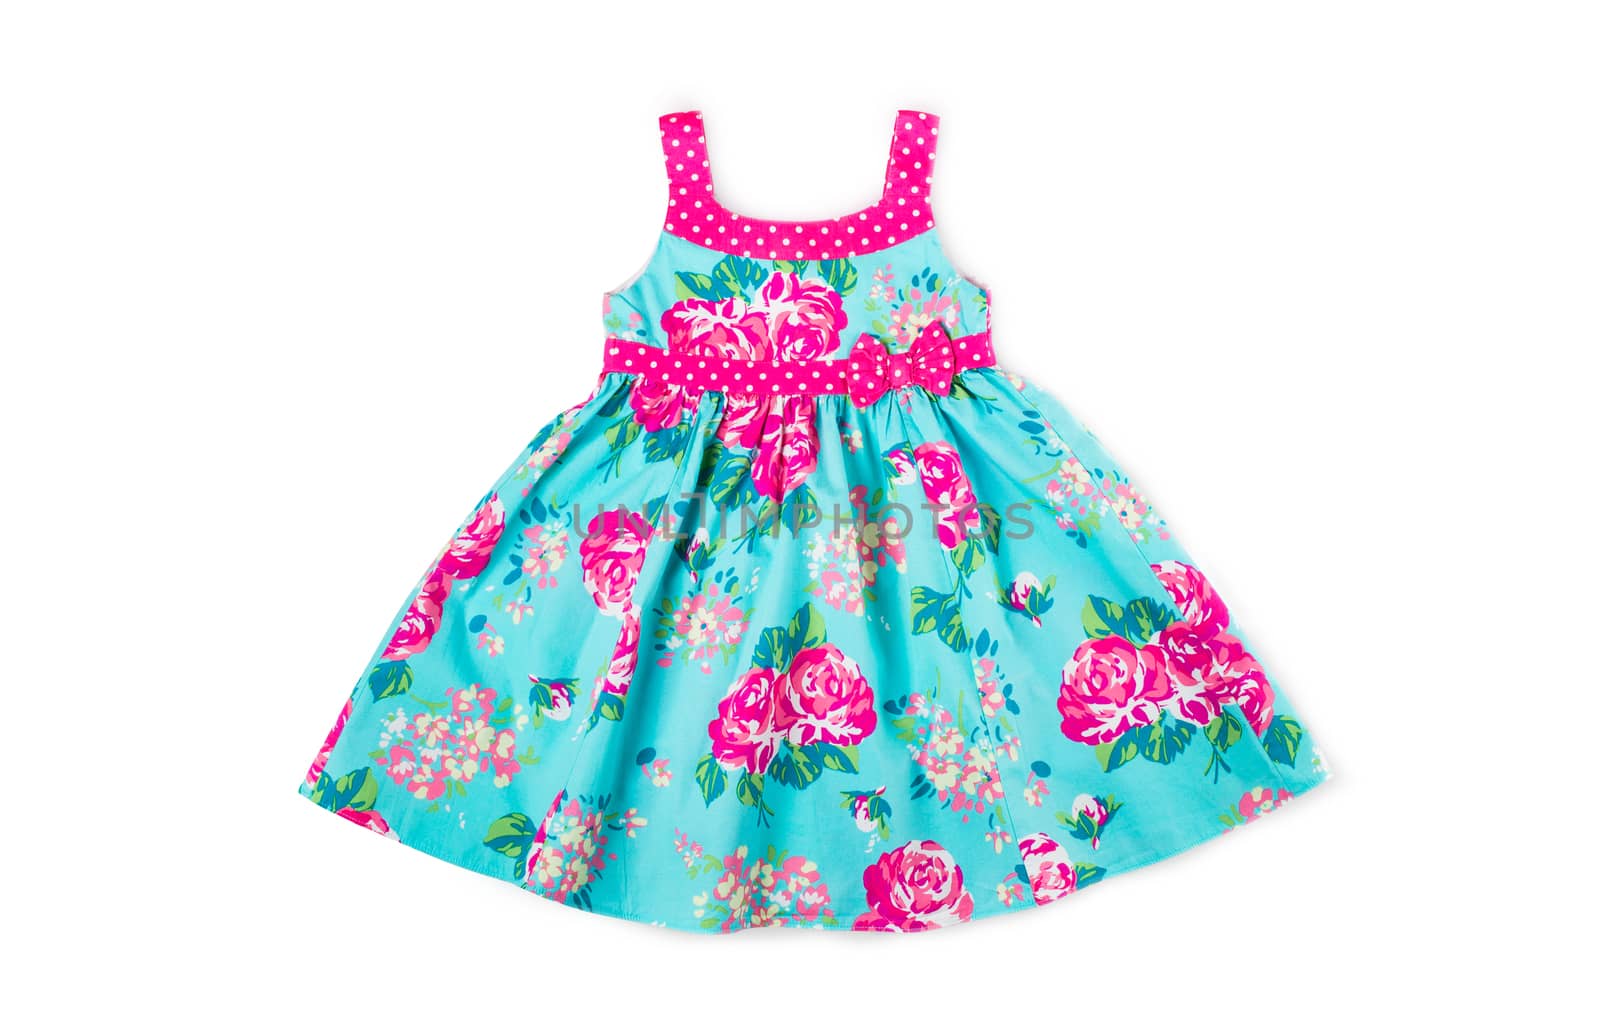 Baby summer dress by iprachenko